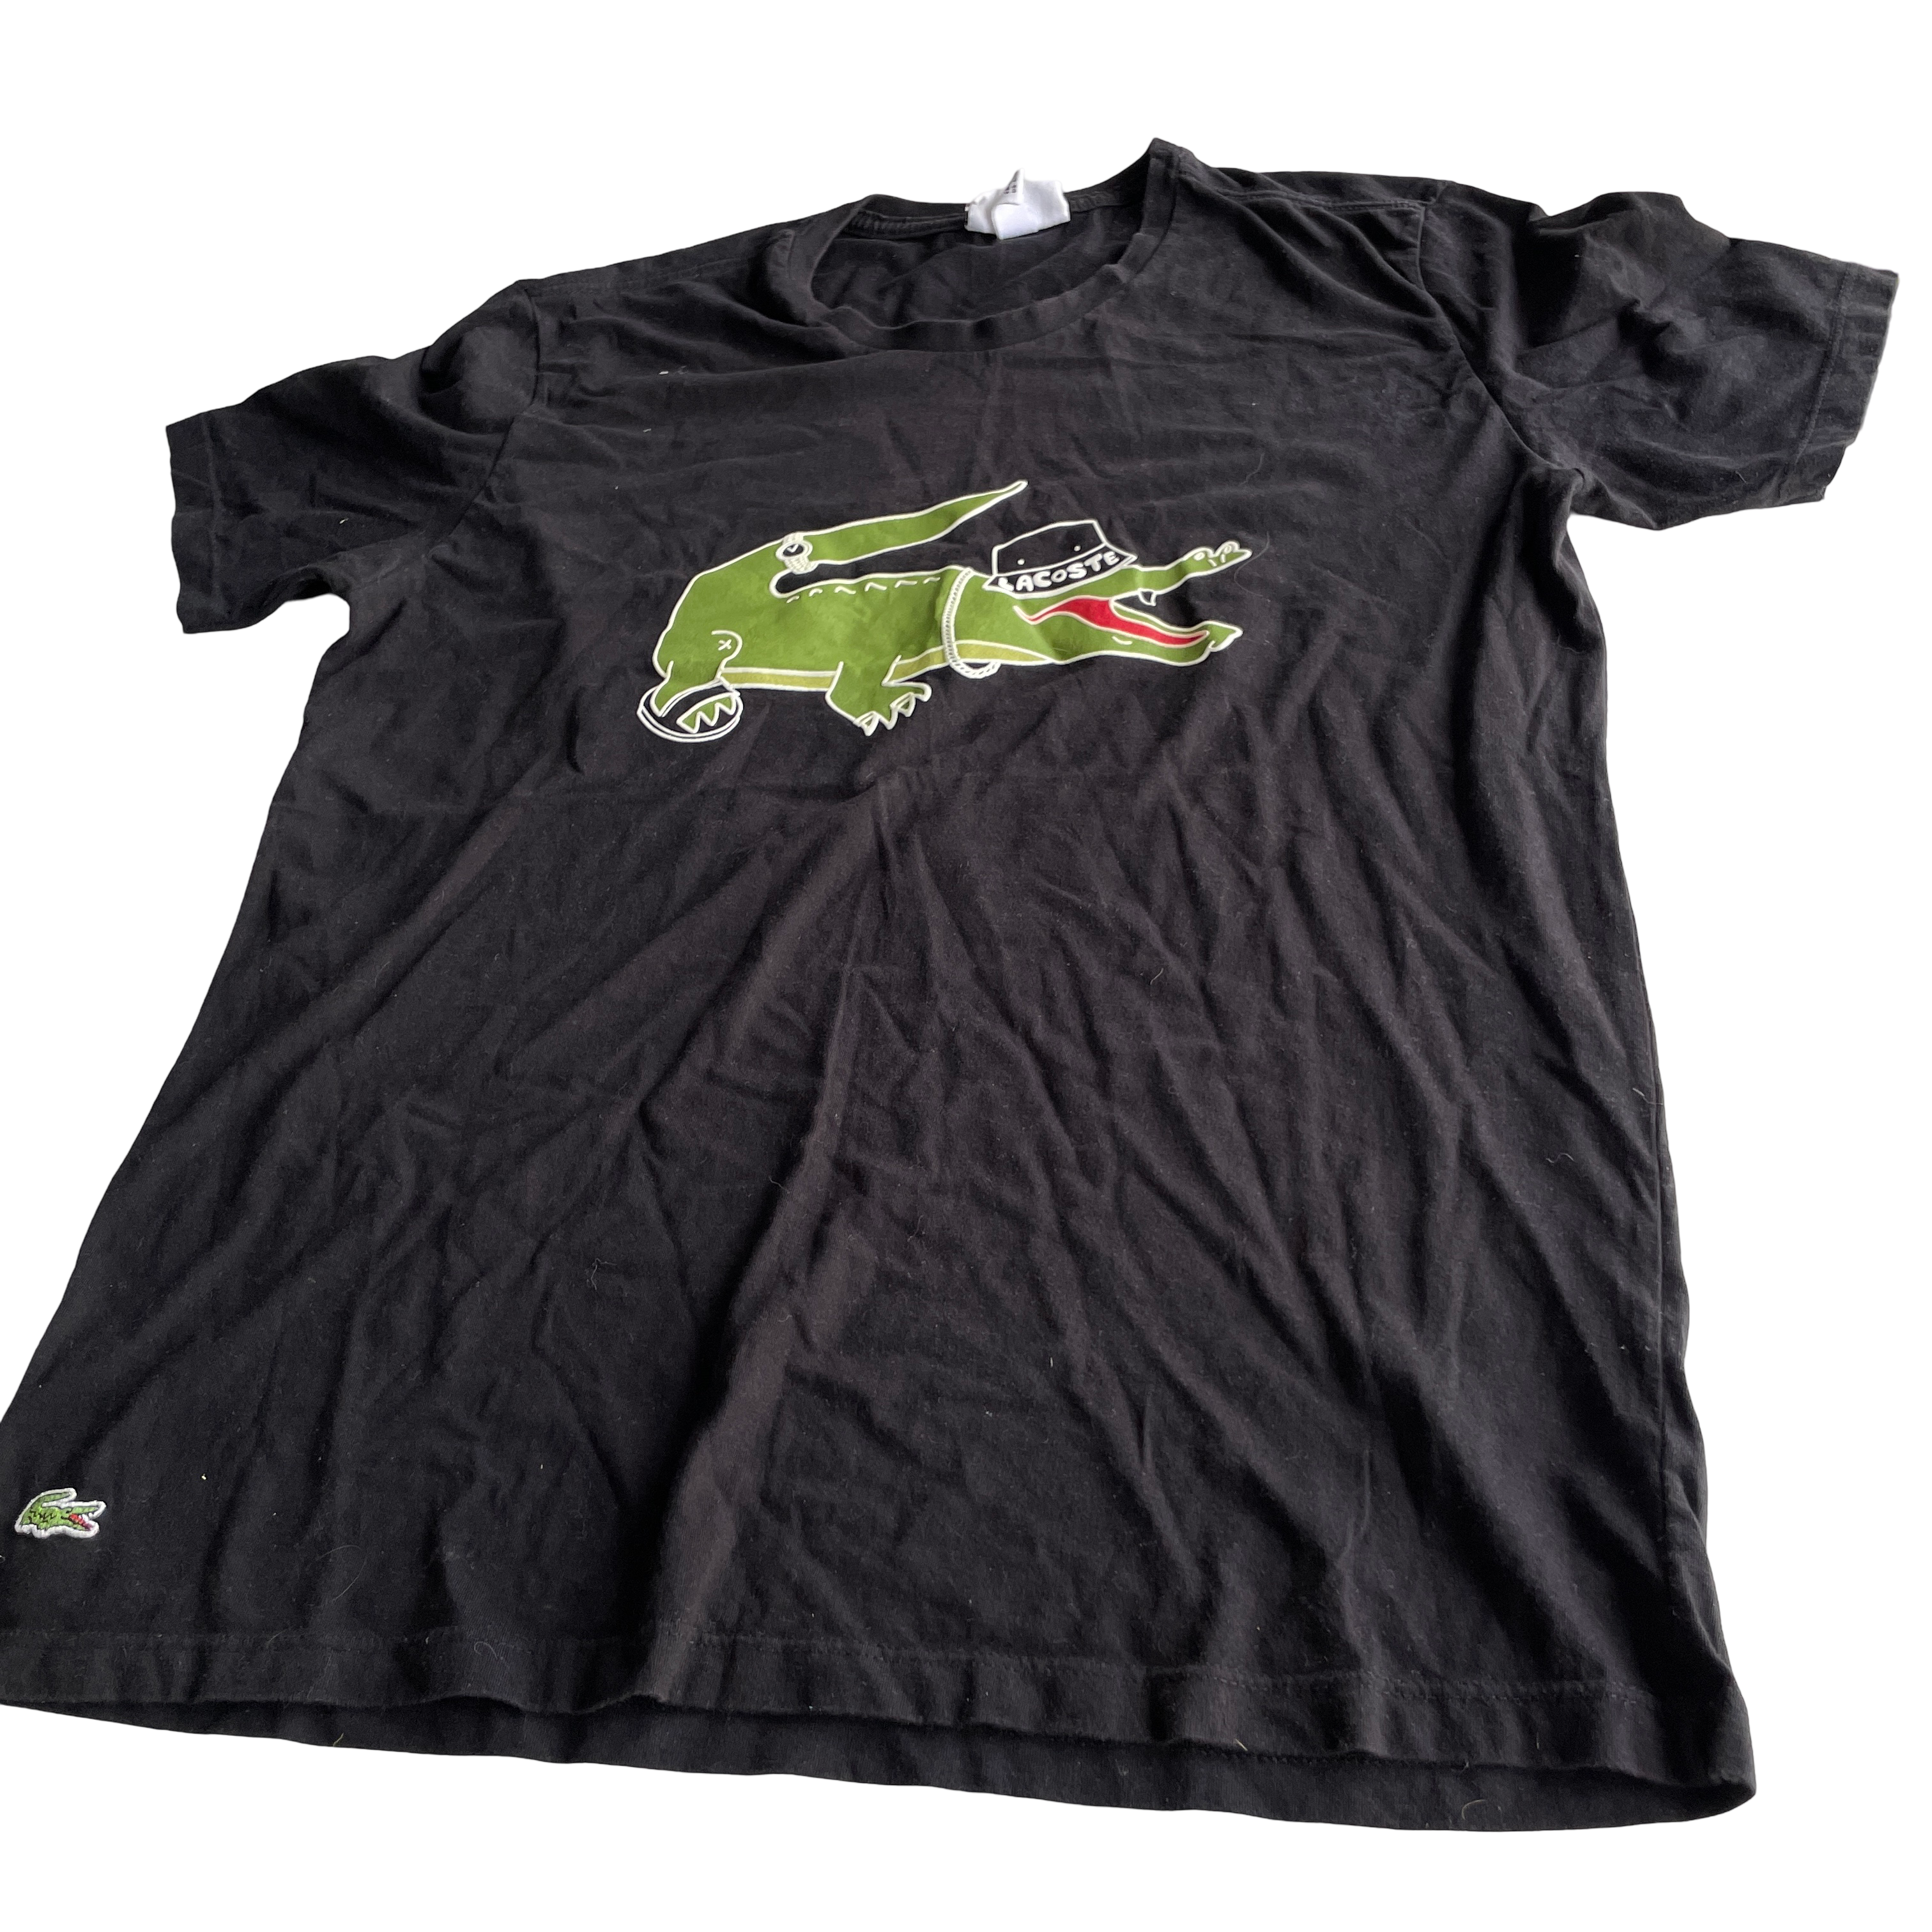   Lacoste BIG - Print  Black T-shirt Men's T-Shirt iN L L 30 W 20 